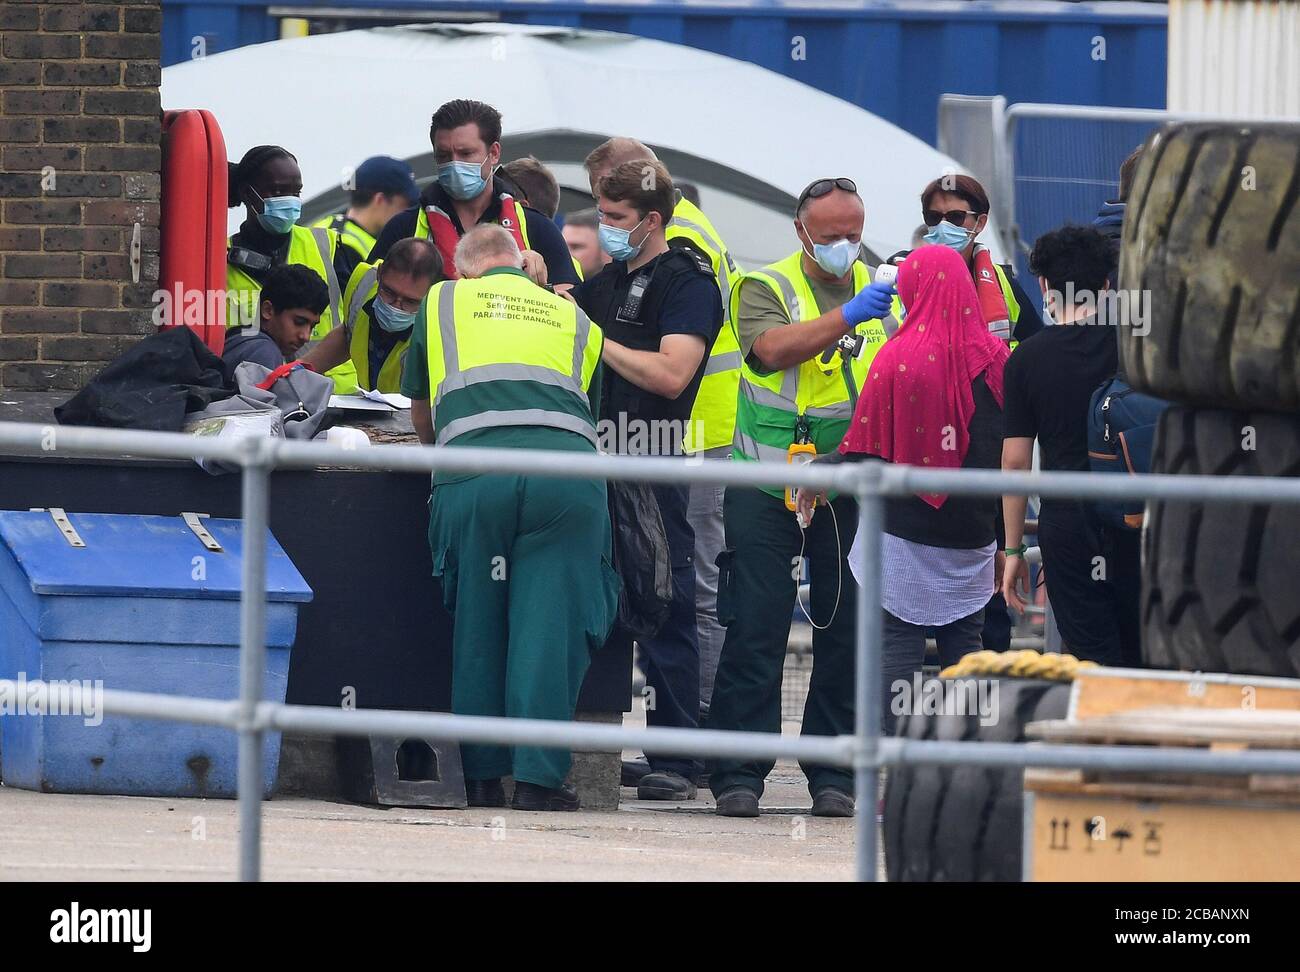 Eine Gruppe von Menschen, die als Migranten gelten, wird von Grenzbeamten nach einer Reihe von kleinen Bootsvorfällen im Kanal heute nach Dover, Kent, gebracht. Stockfoto